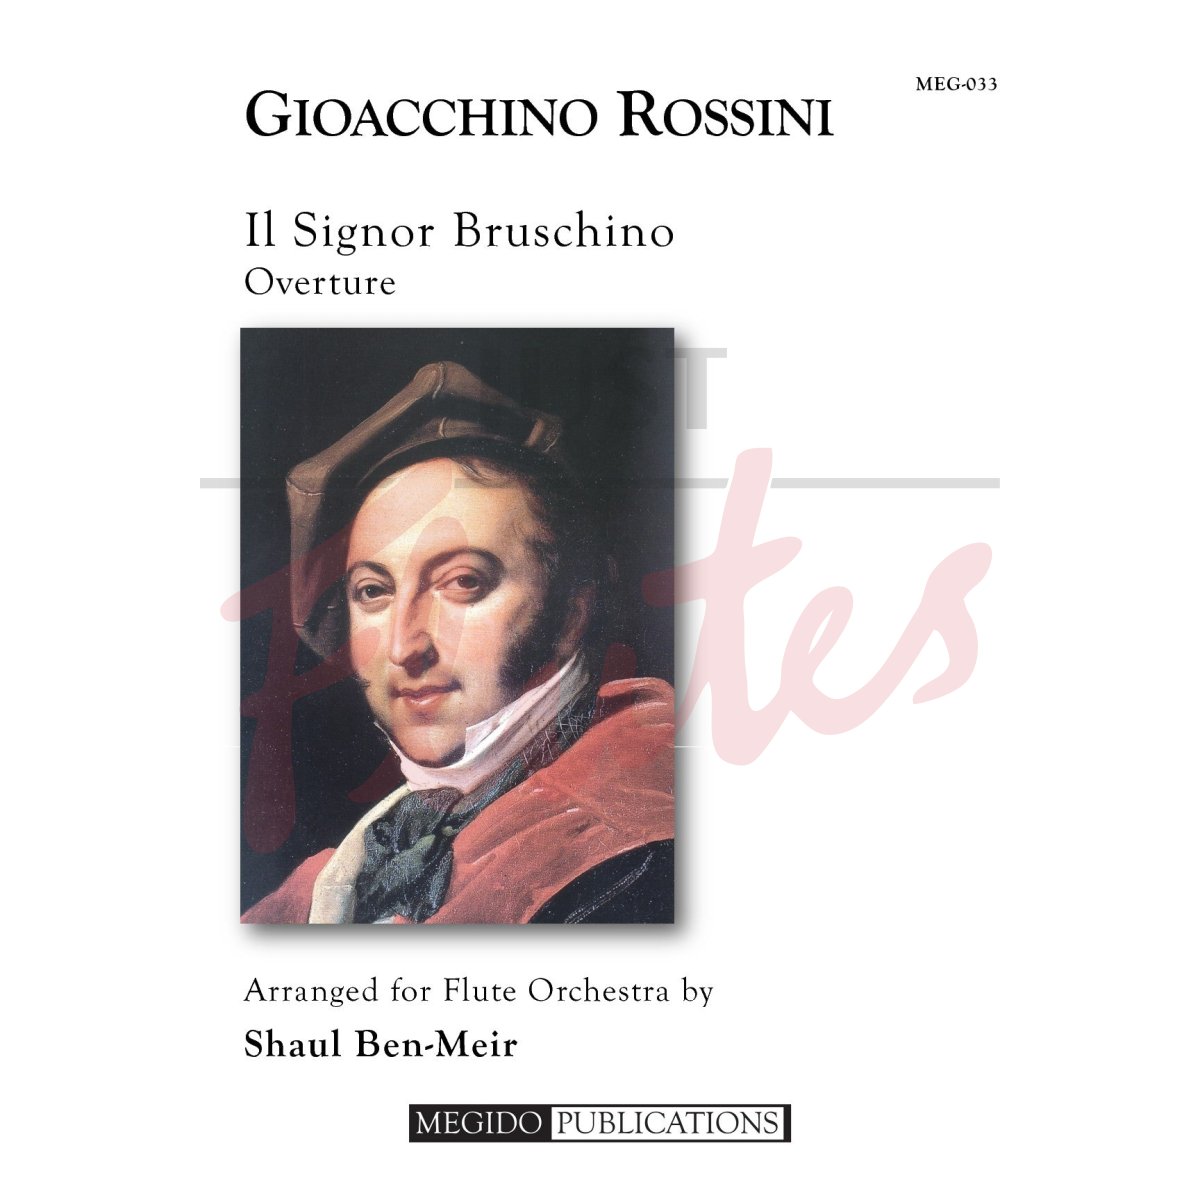 Il Signor Bruschino Overture for Flute Orchestra